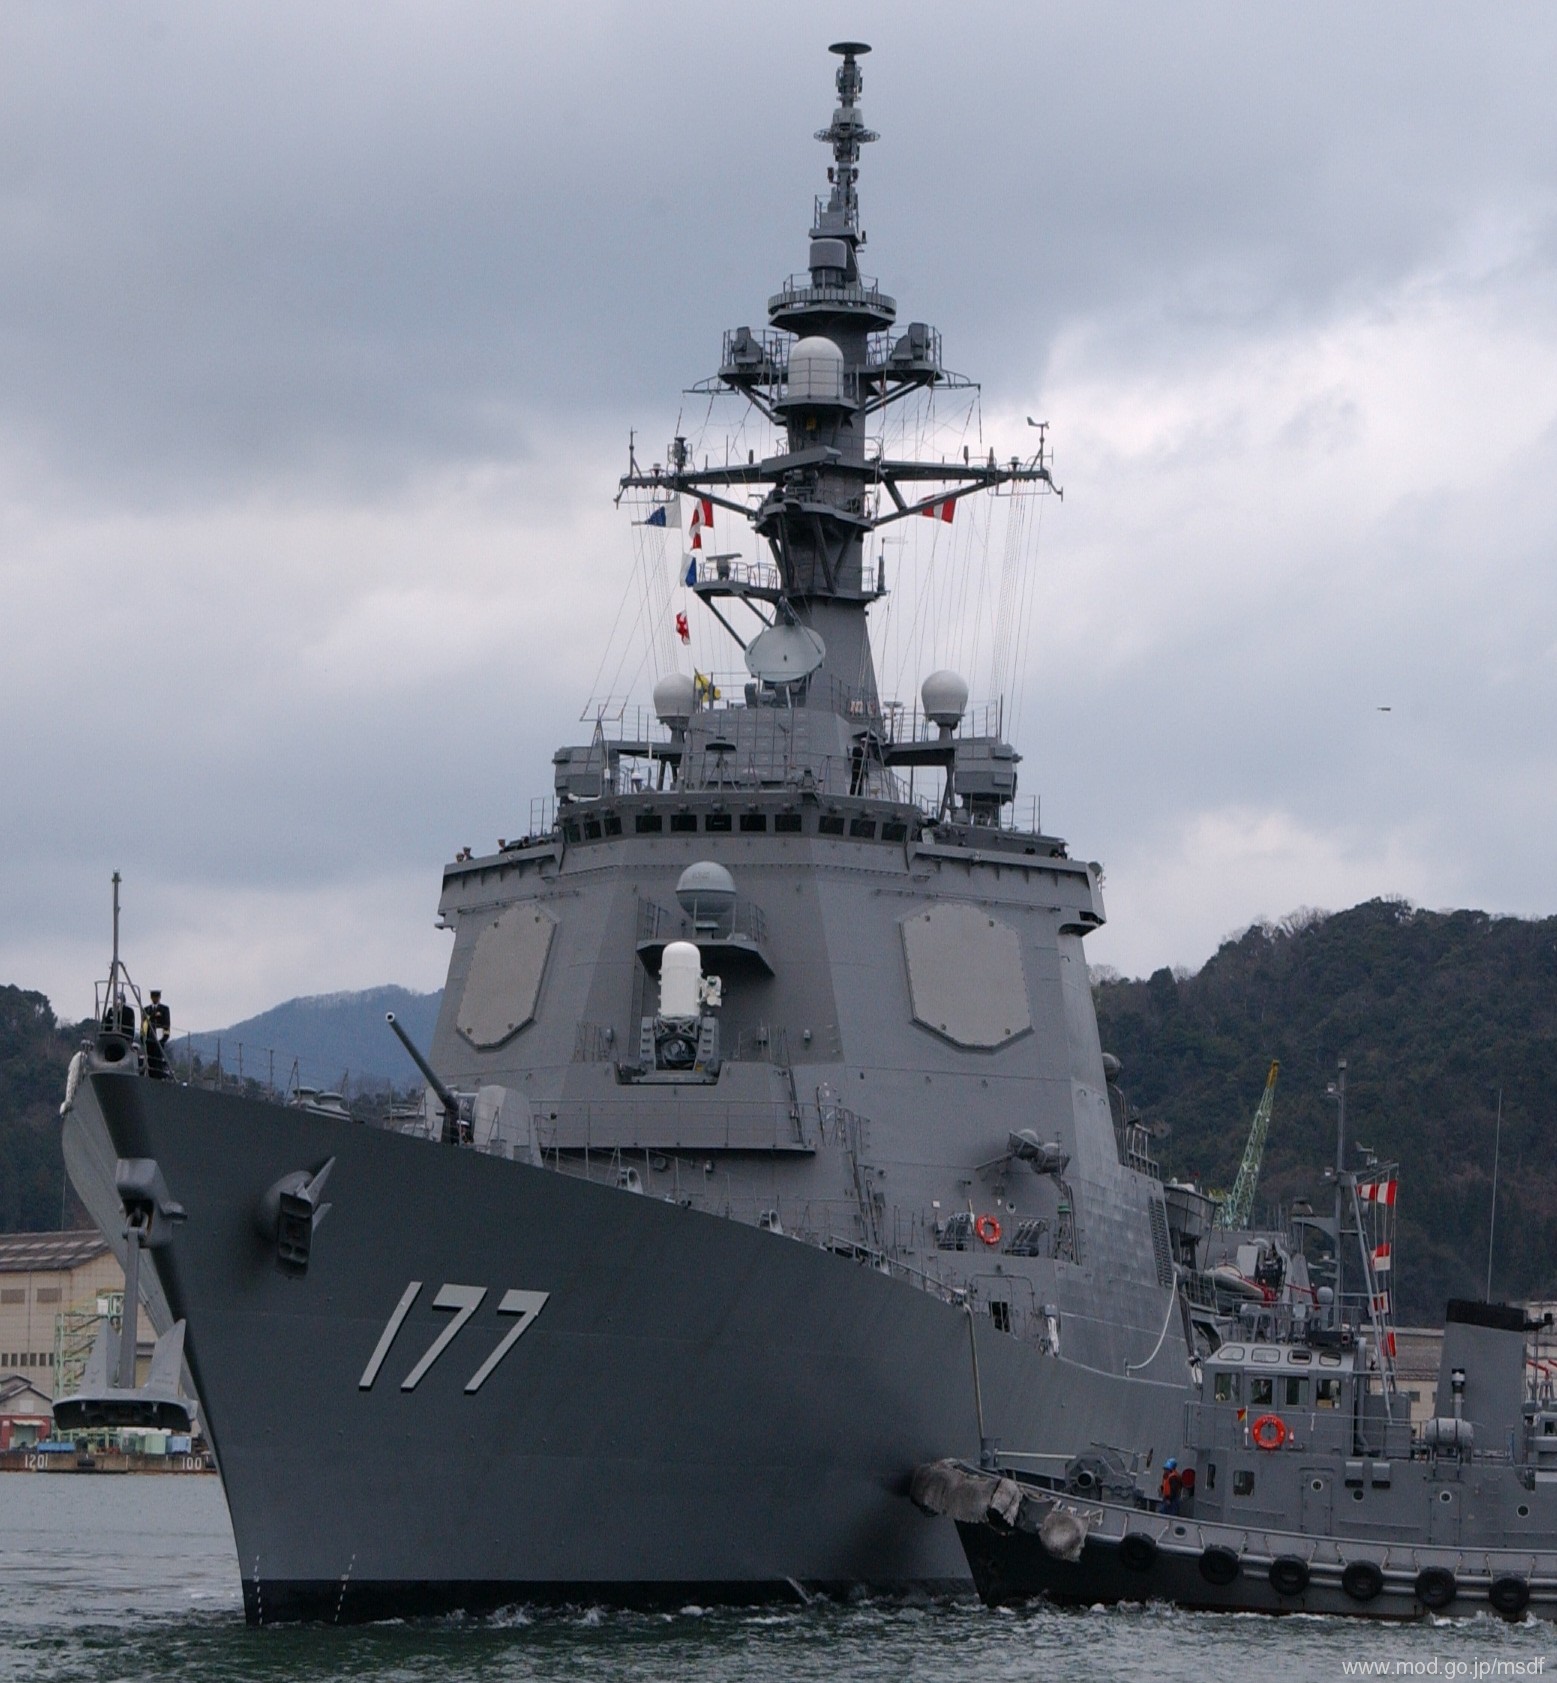 ddg-177 jds atago guided missile destroyer japan maritime self defense force jmsdf 08